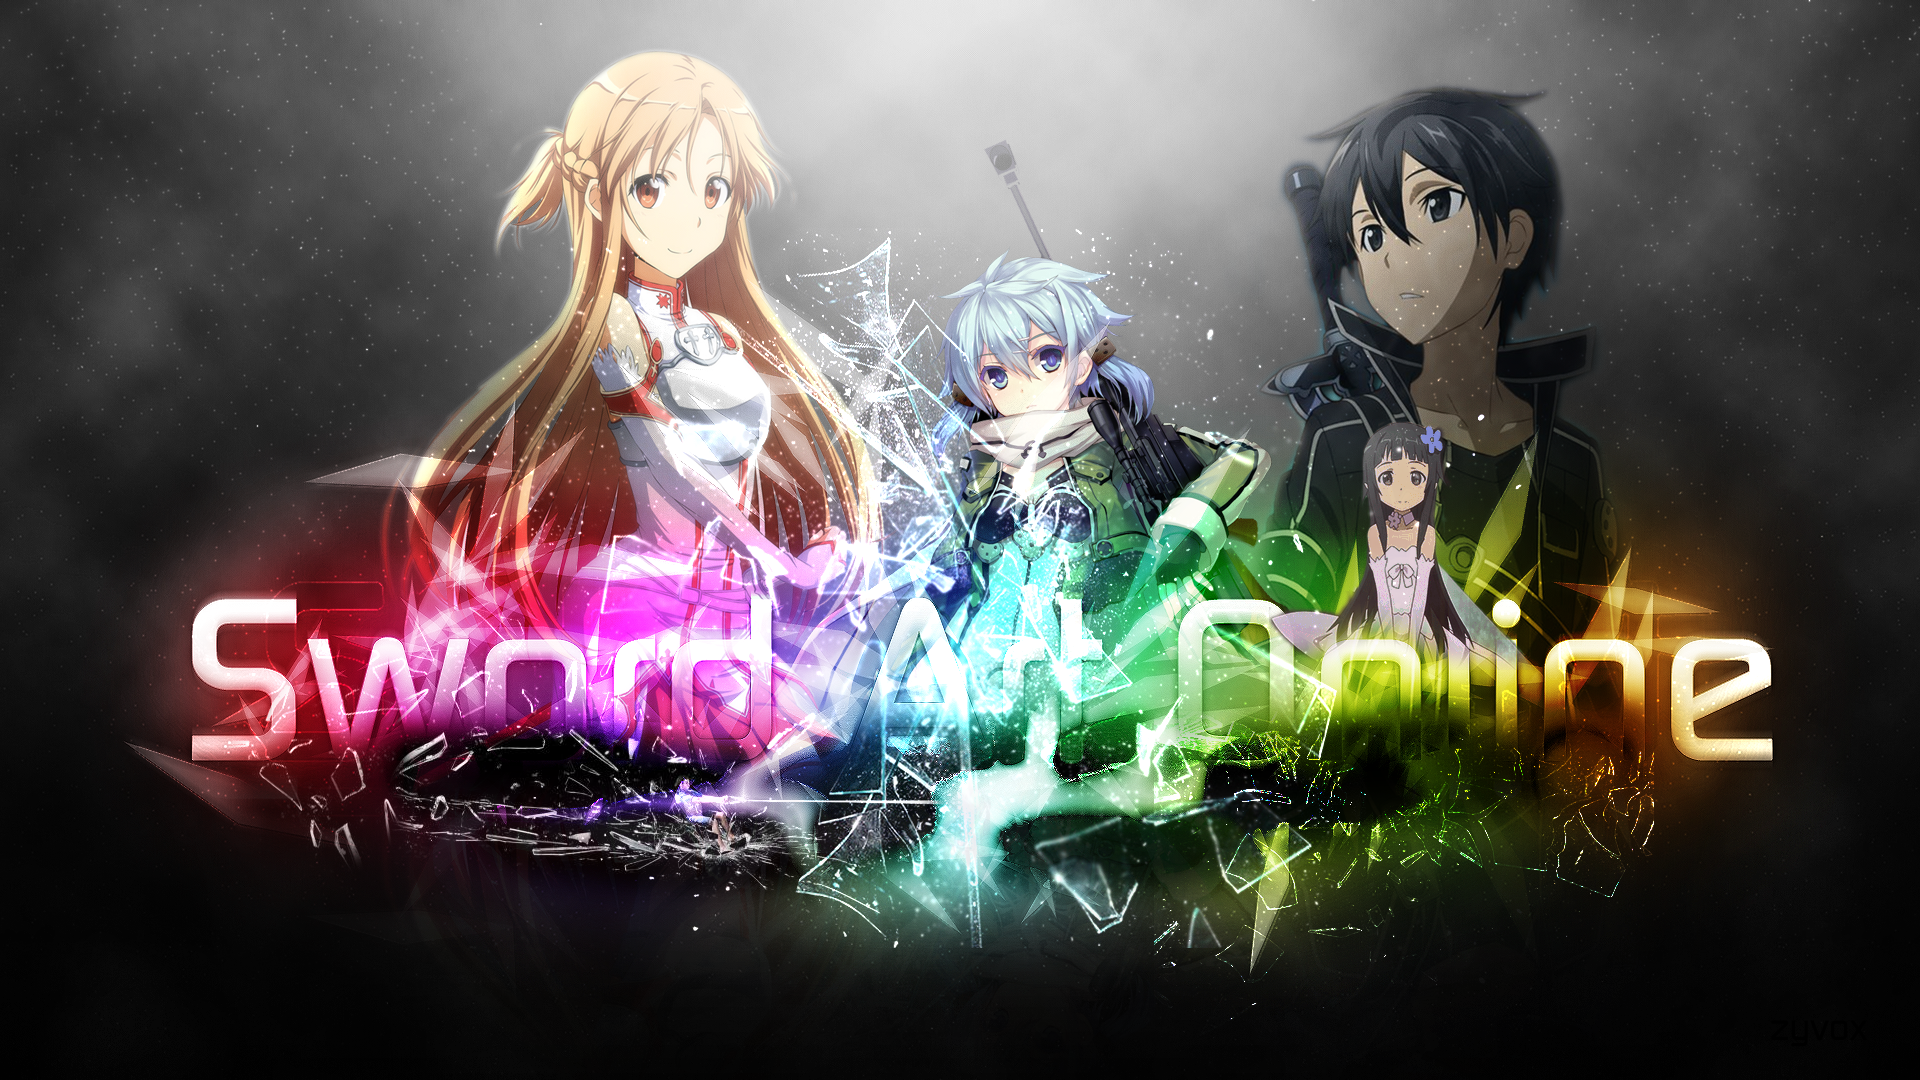 Yui Sword Art Online HD Wallpaper Background